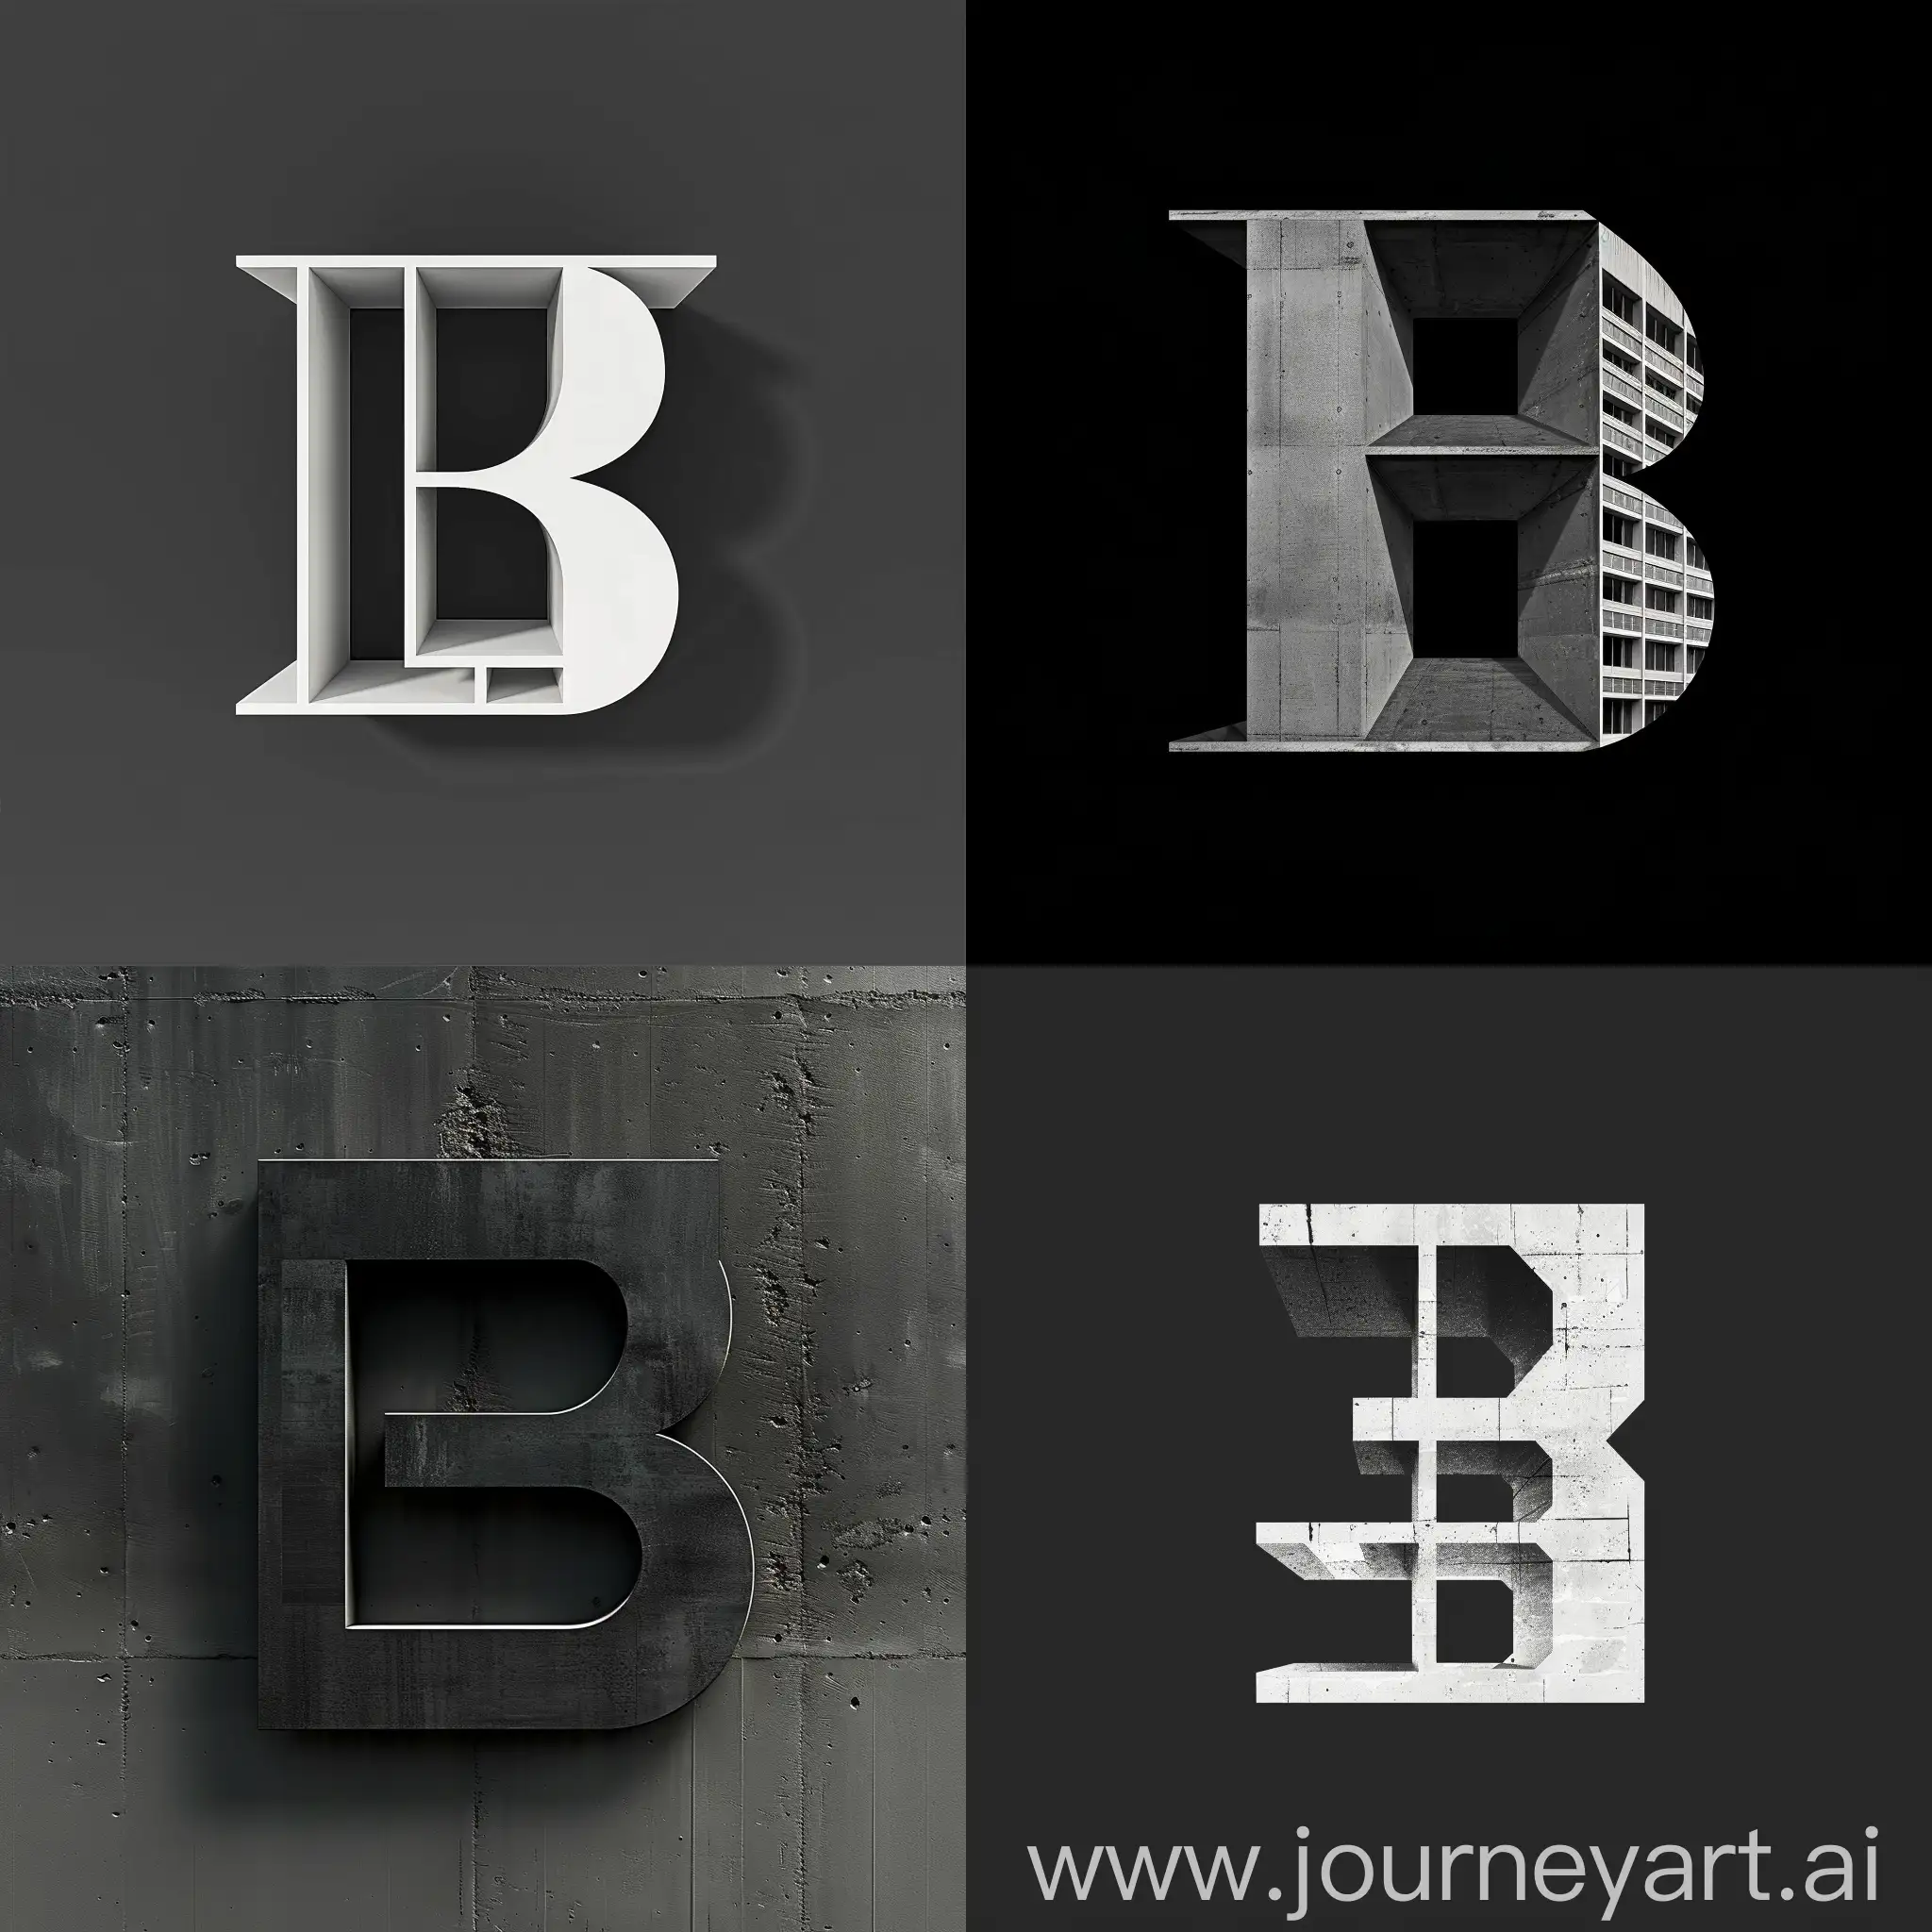 建筑公司
加入字母B的形状
平面
LOGO
简洁